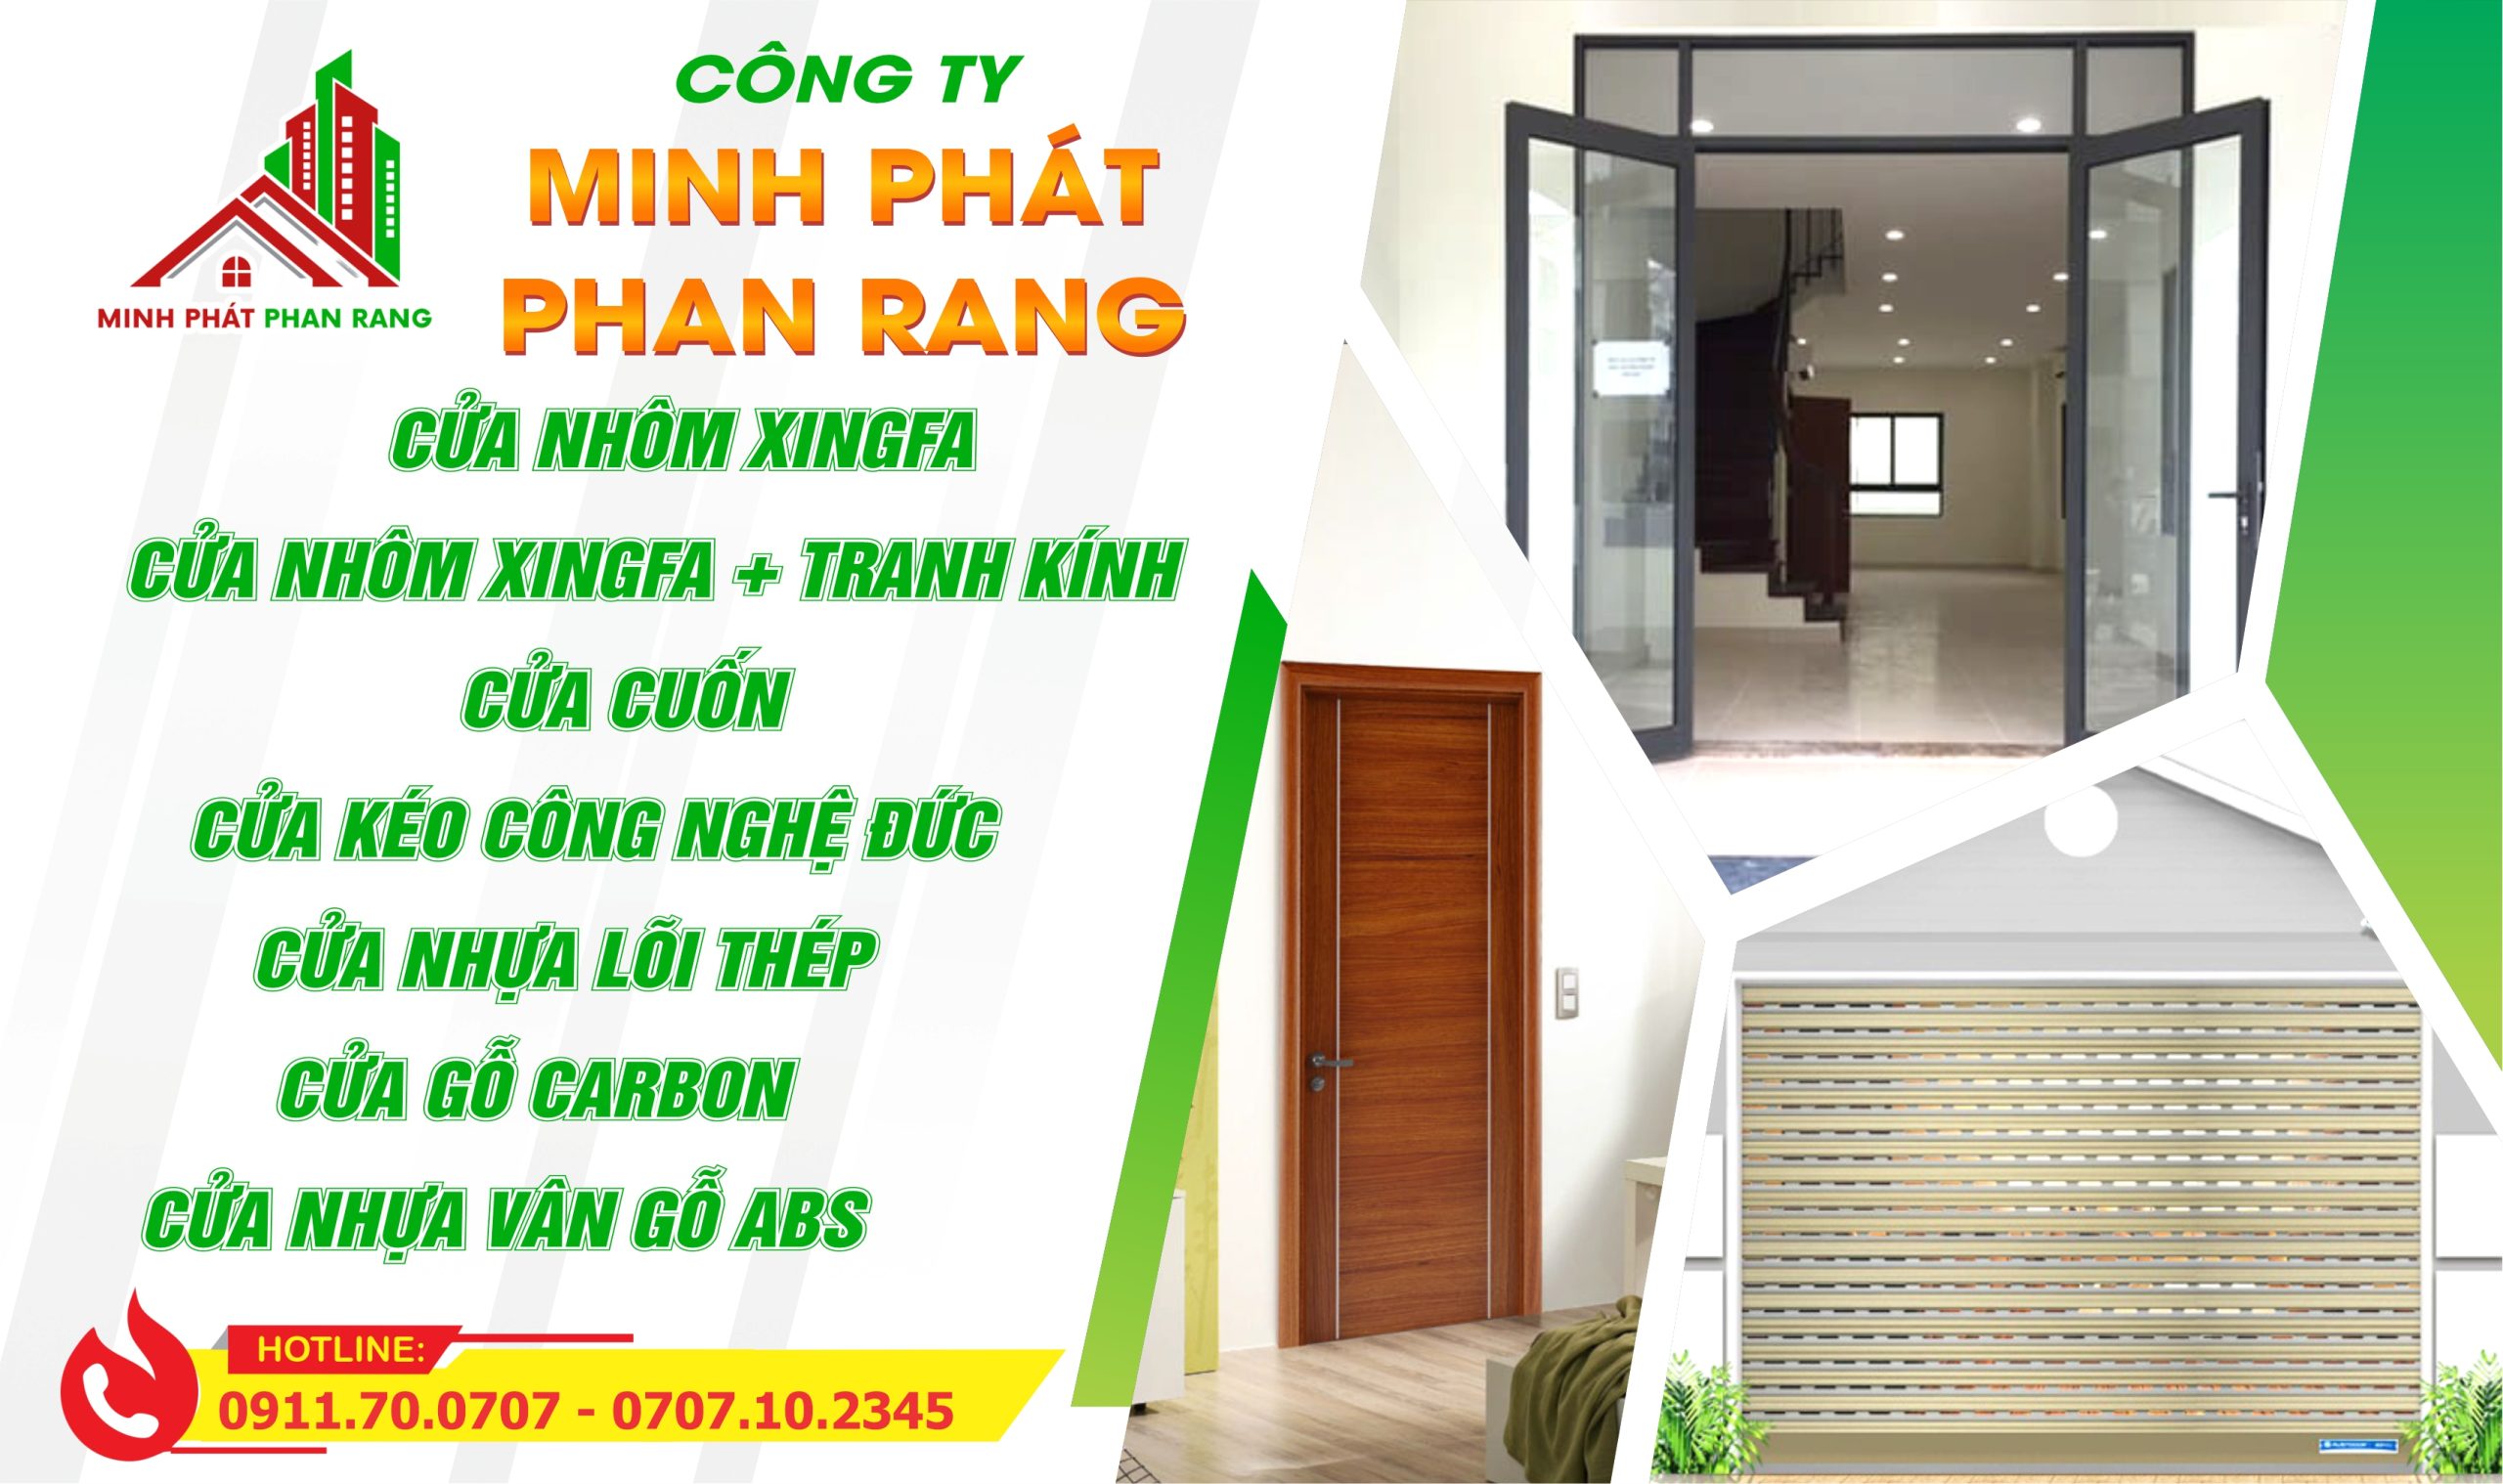 Xing Fa Minh Phát Phan Rang Chất Lượng uy Tín